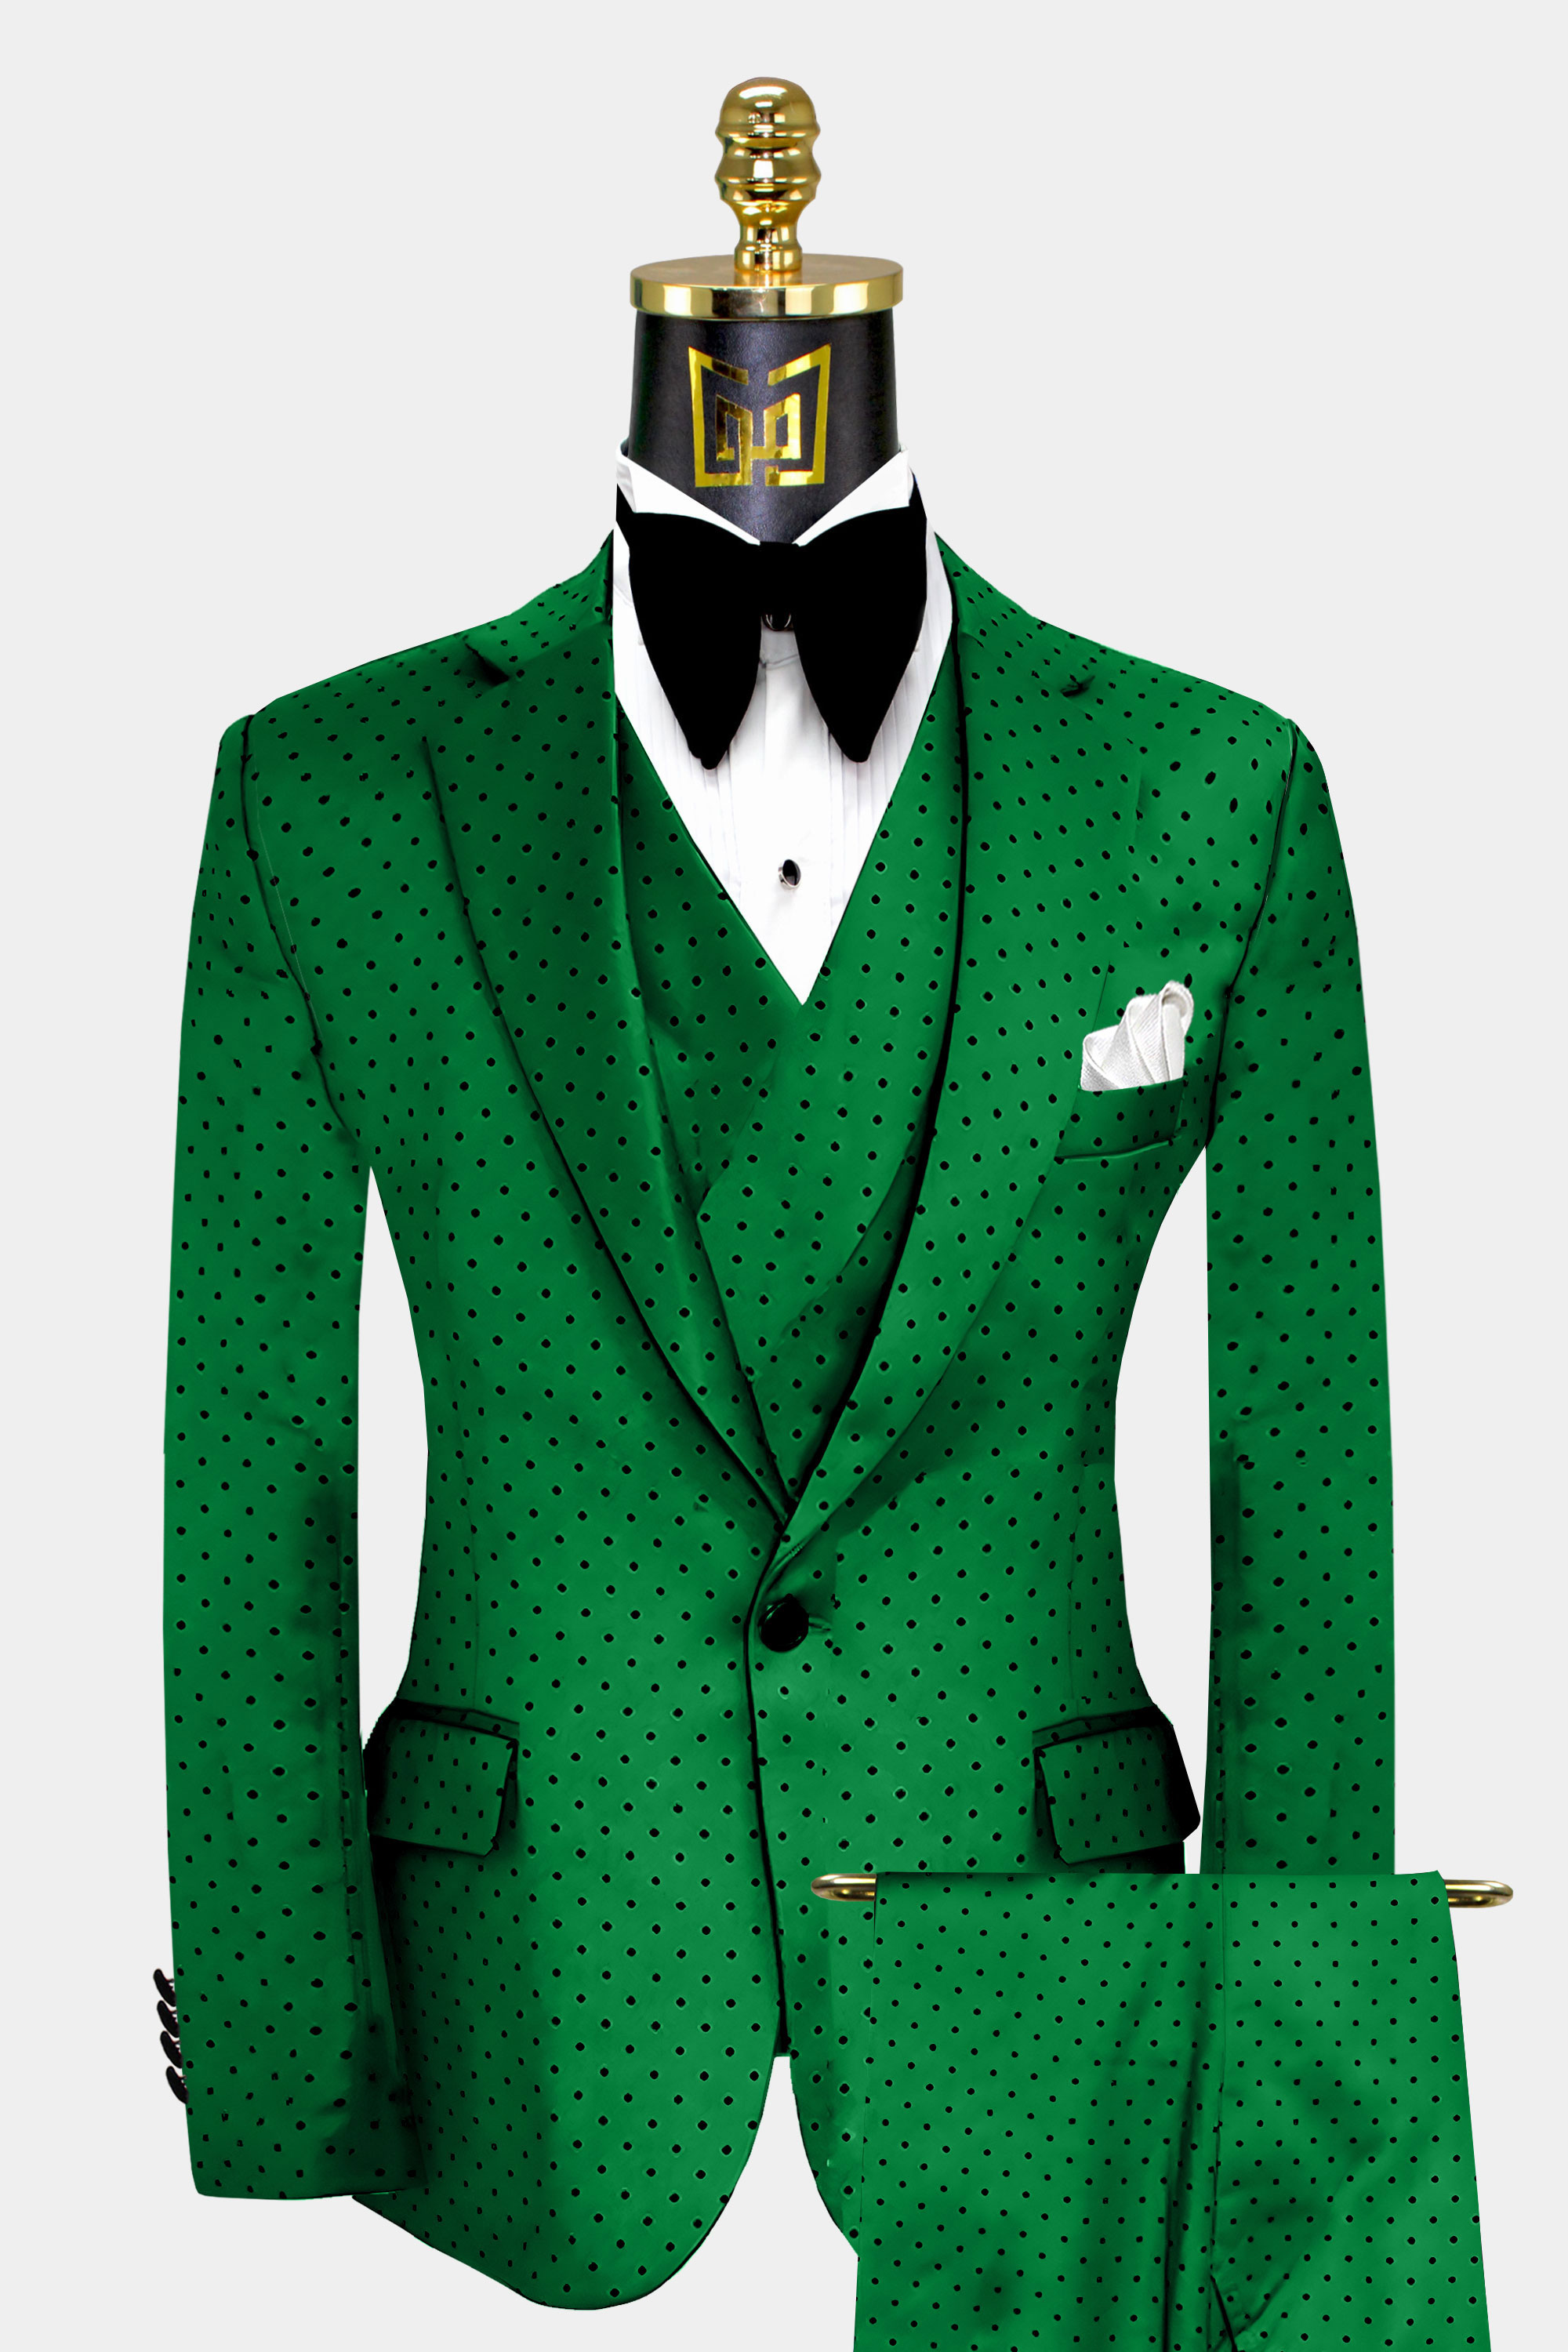 Mens-Green-Polka-Dot-Suit-Wedding-Groom-Tuxedo-from-Gentlemansguru.com